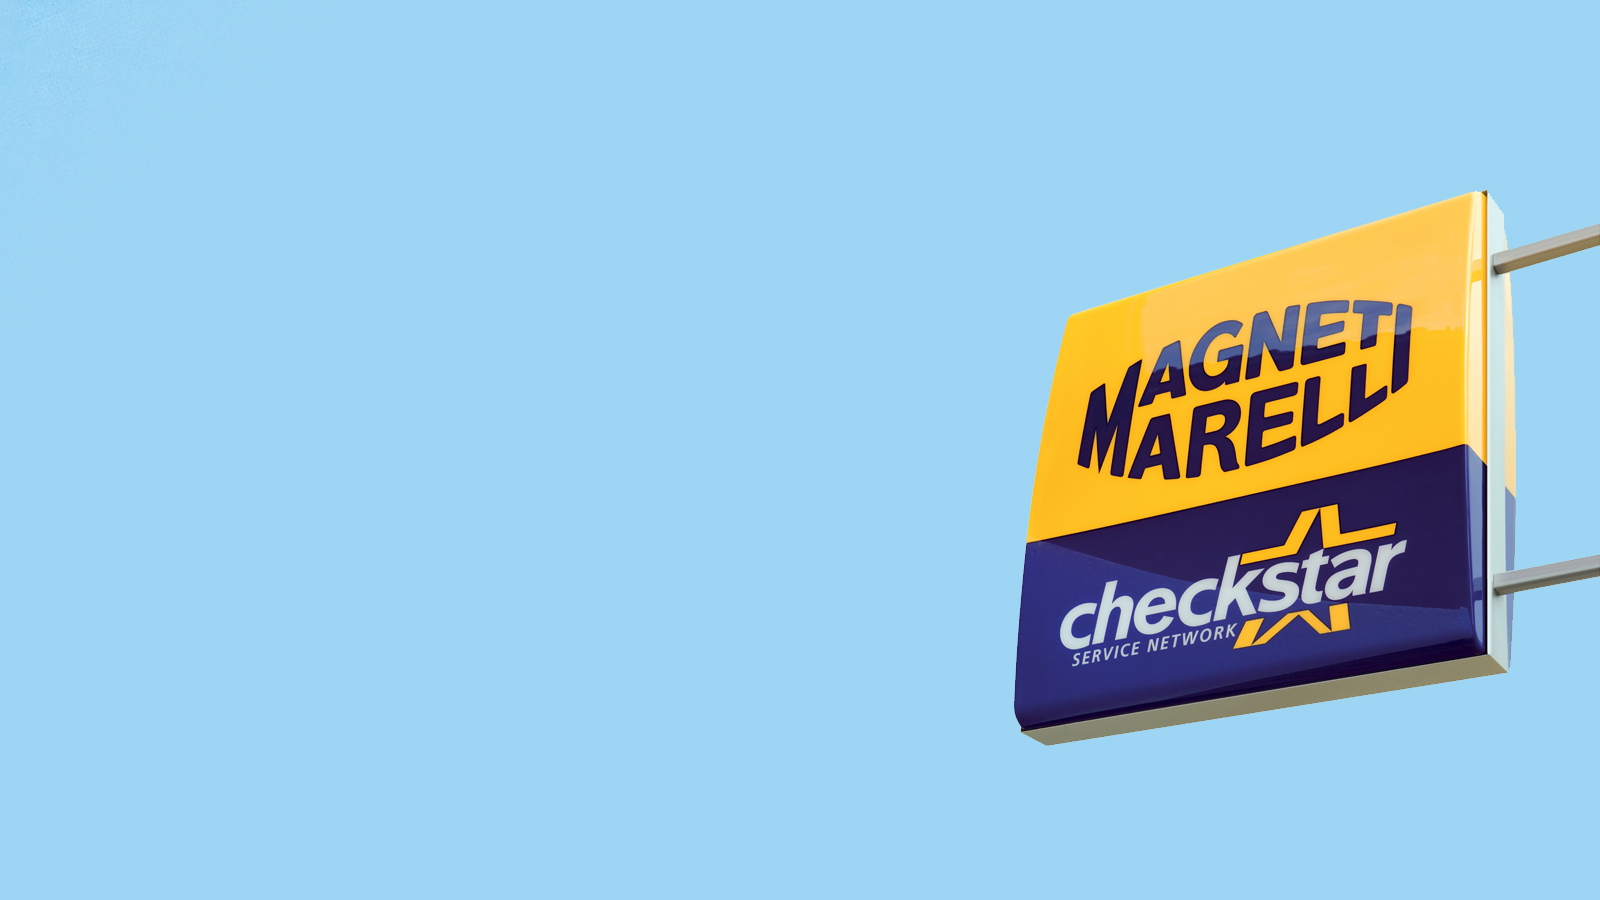 Magneti Marelli Parts & Services - Company